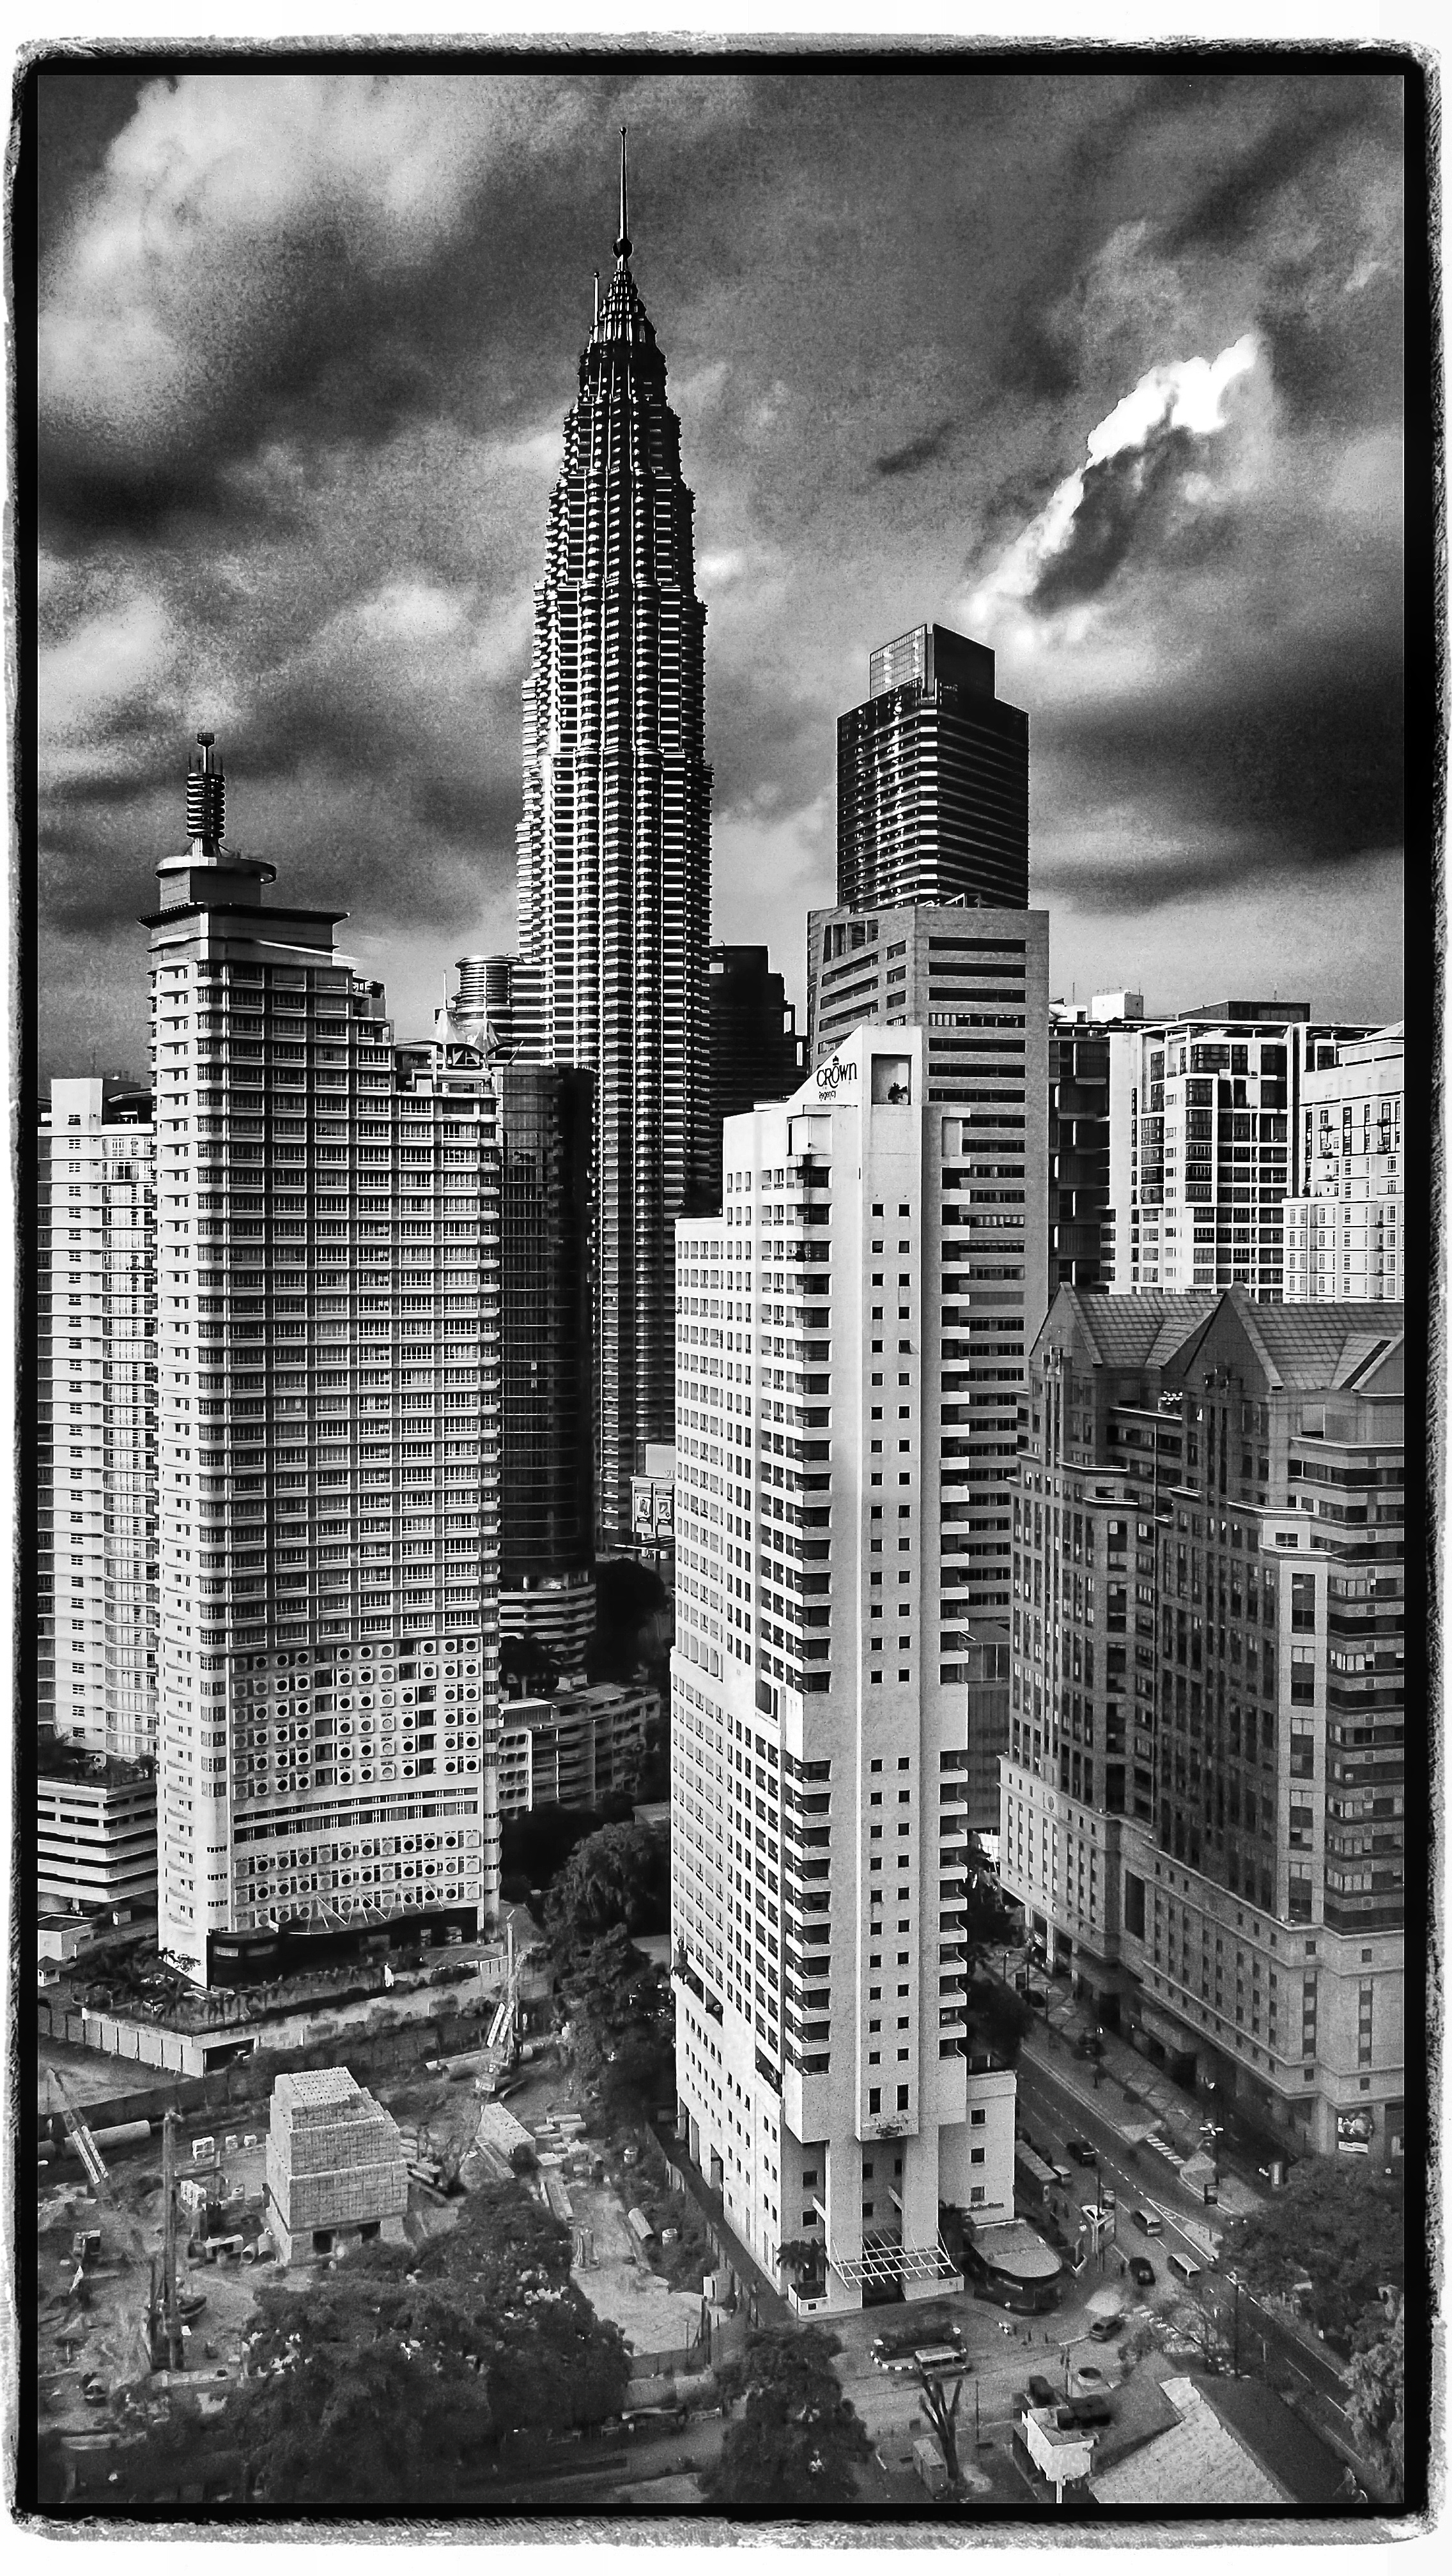    Kuala Lumpur &amp; Petronas Towers   